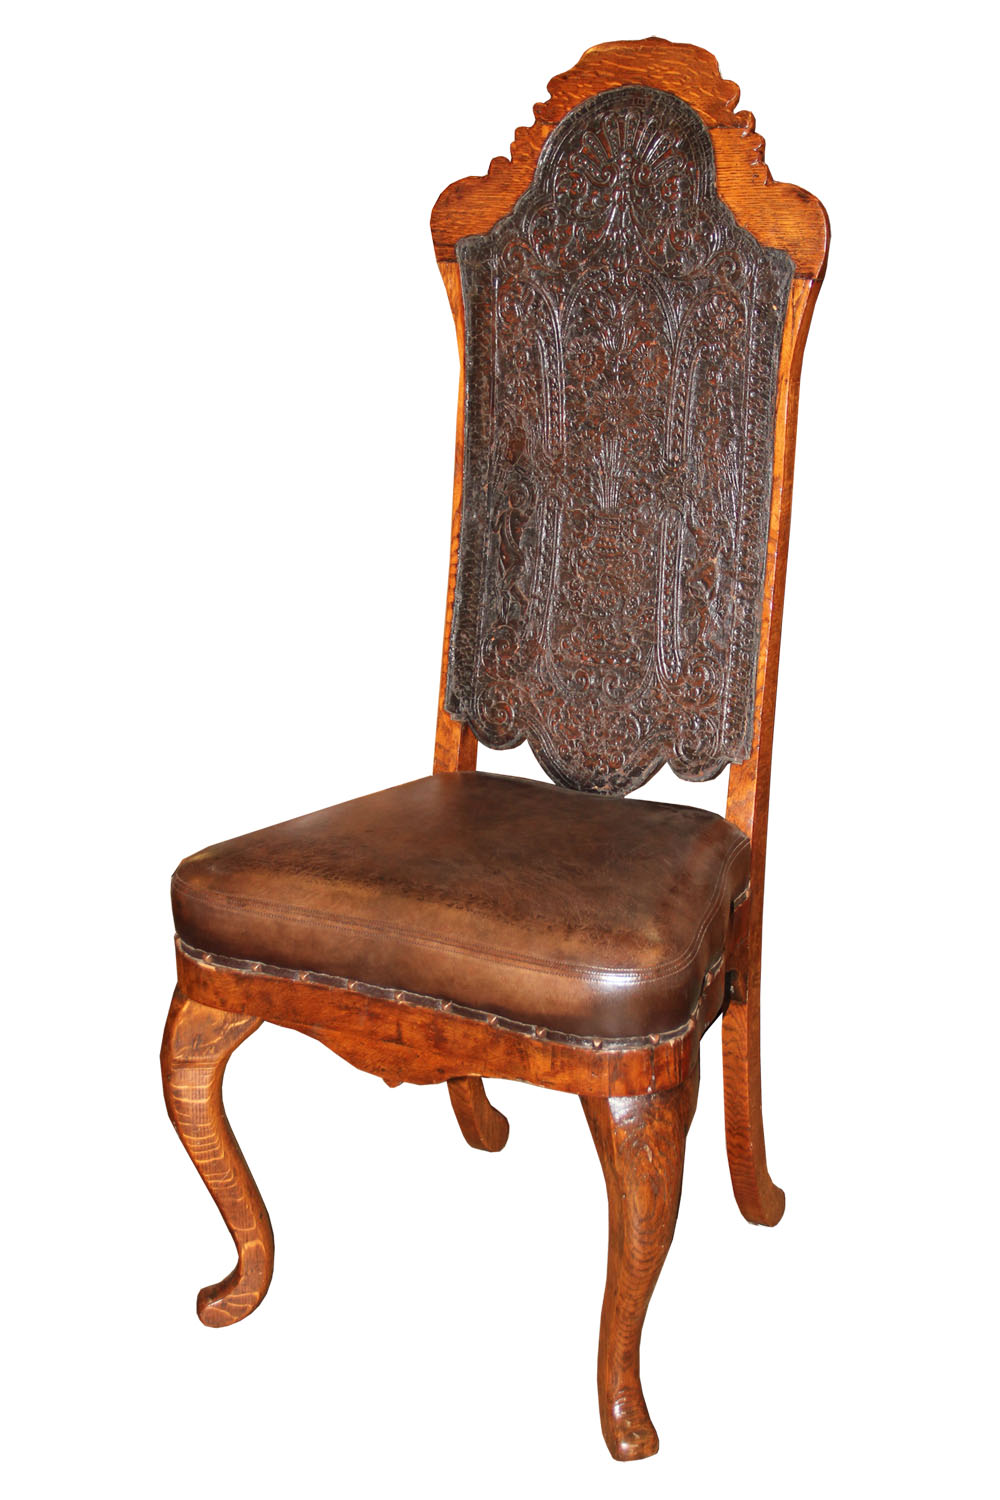 An 18th Century Portuguese Oak Chair No. 4528